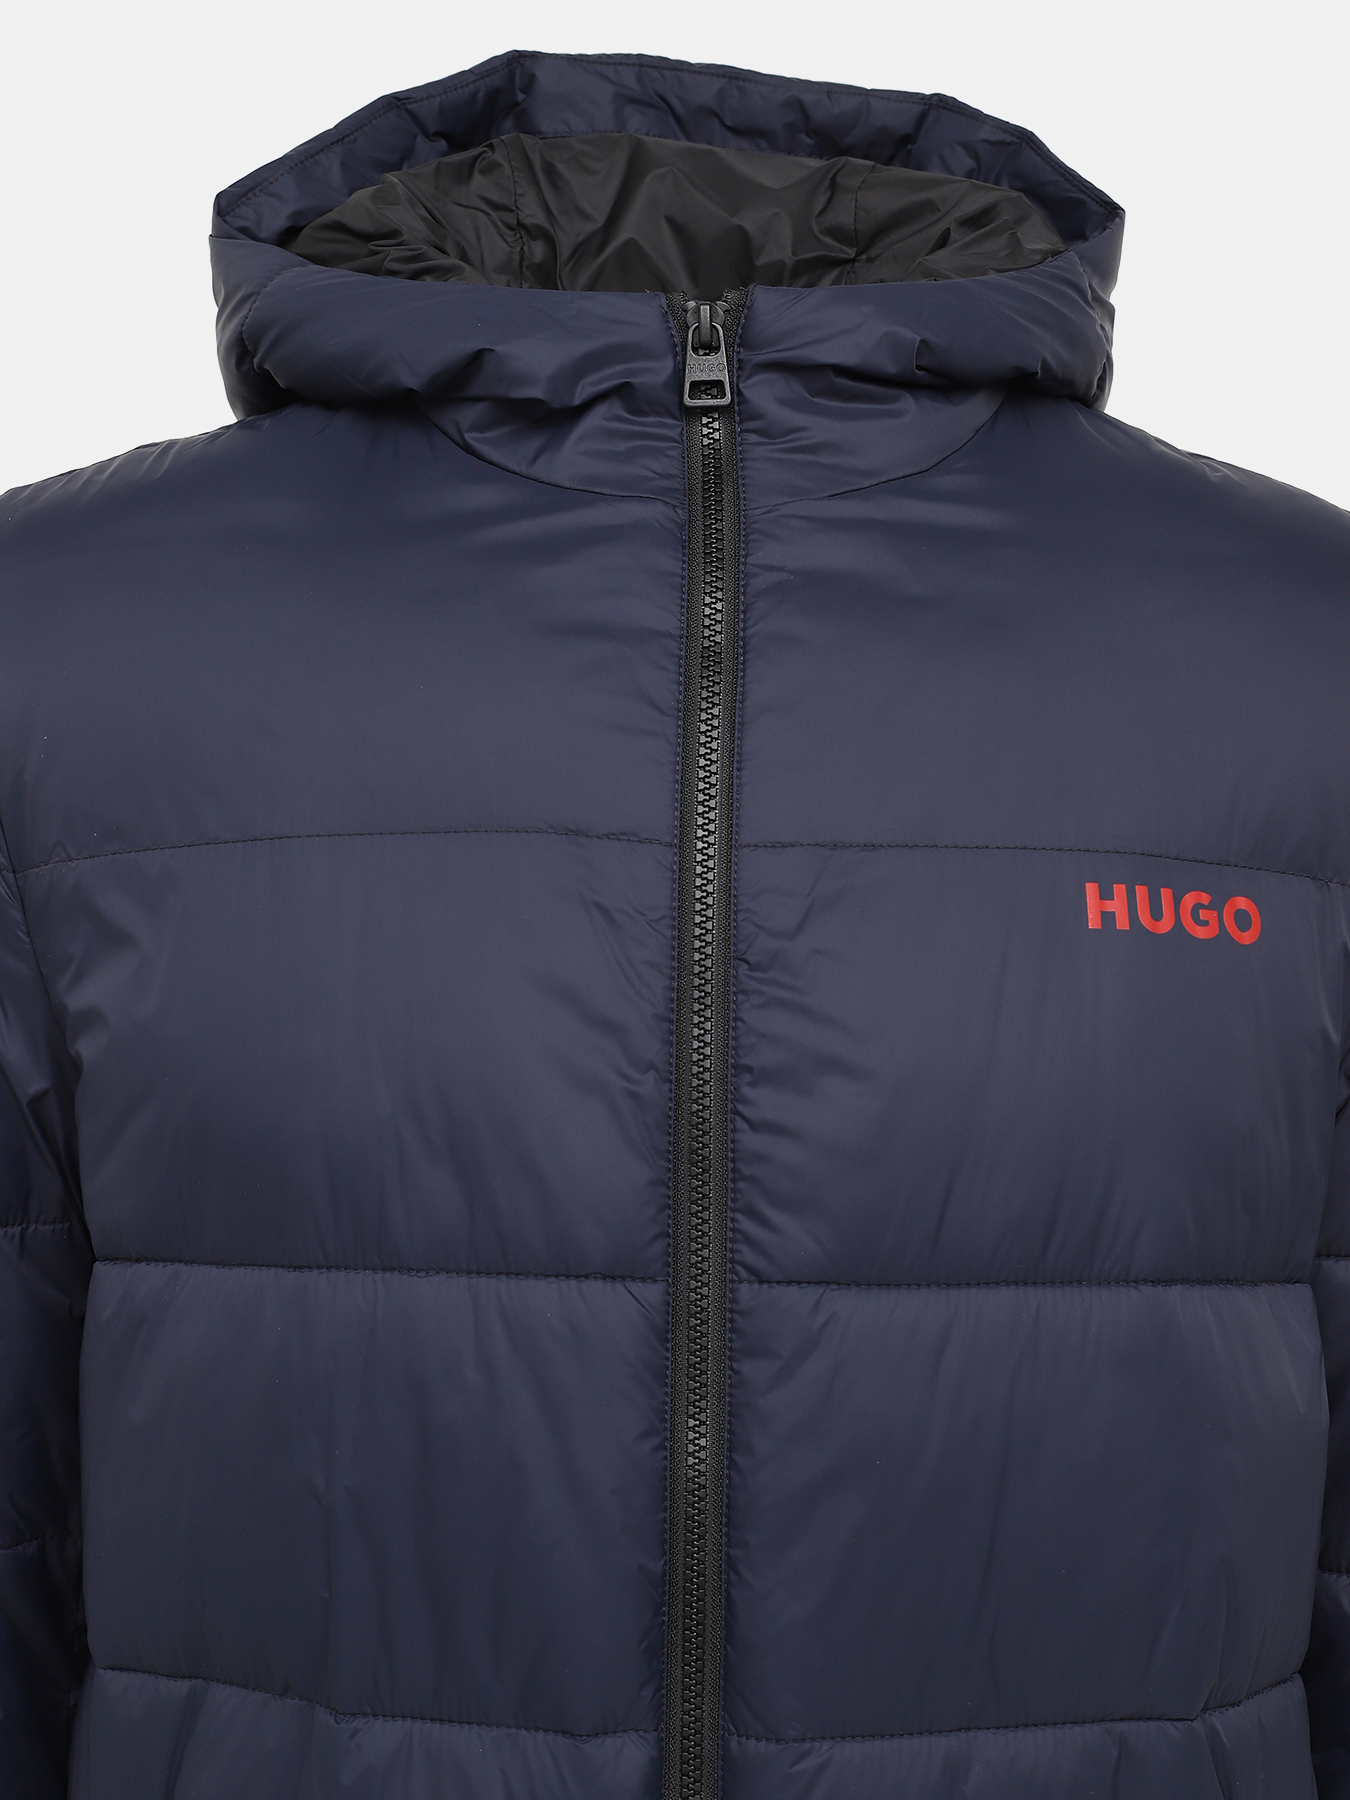 Удлиненная куртка Mati HUGO 426056-044, цвет темно-синий, размер 50-52 - фото 3